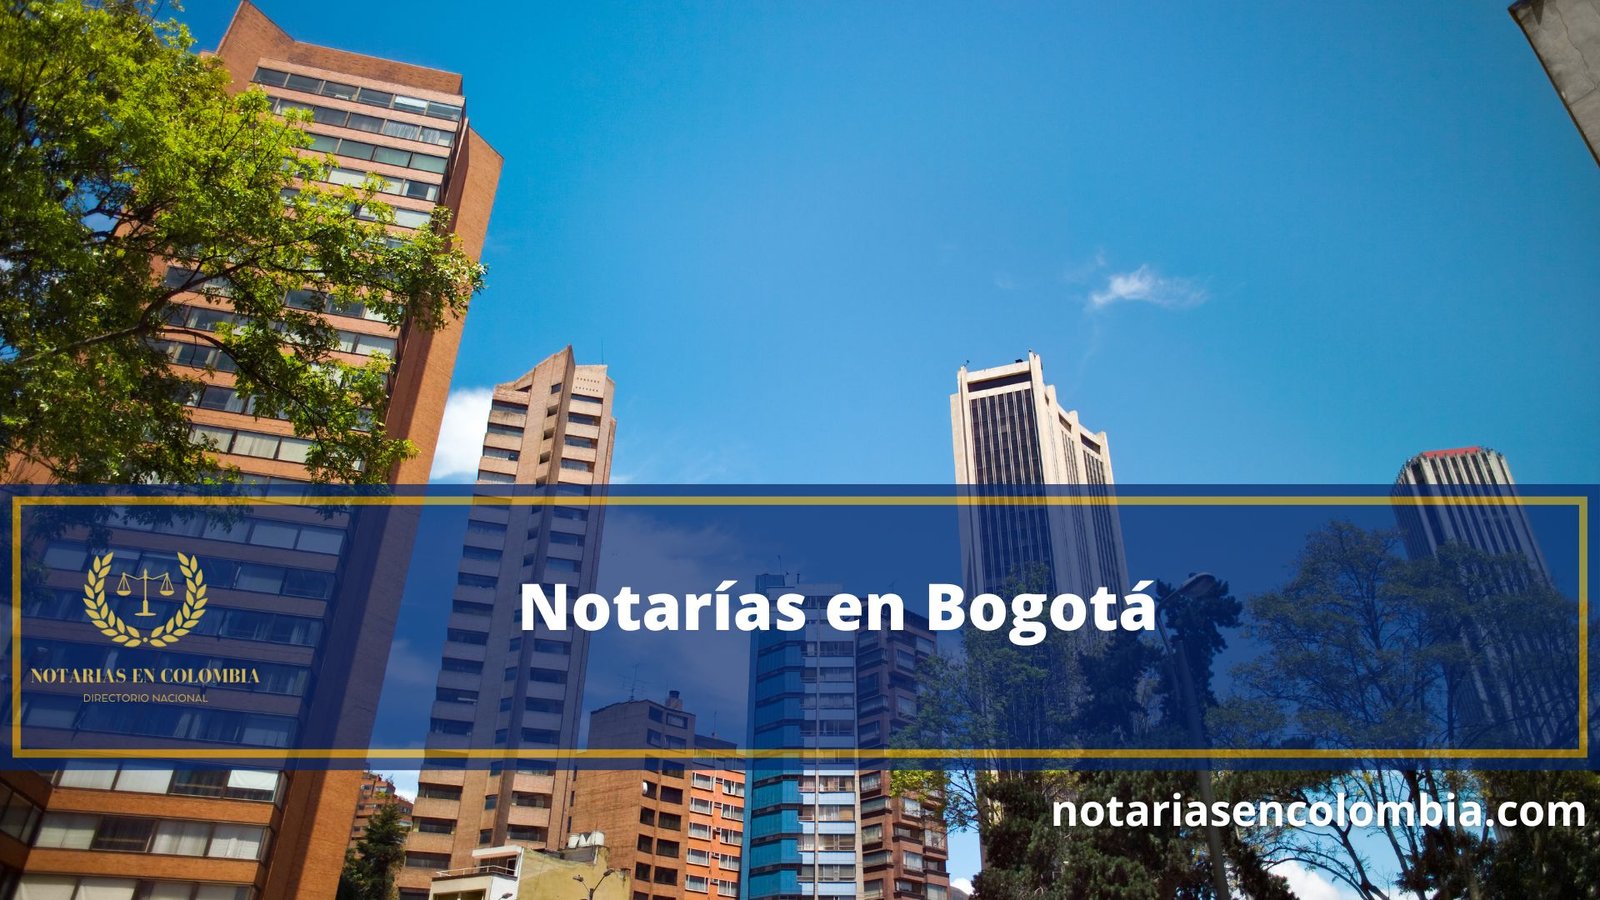 Notarías en Bogotá